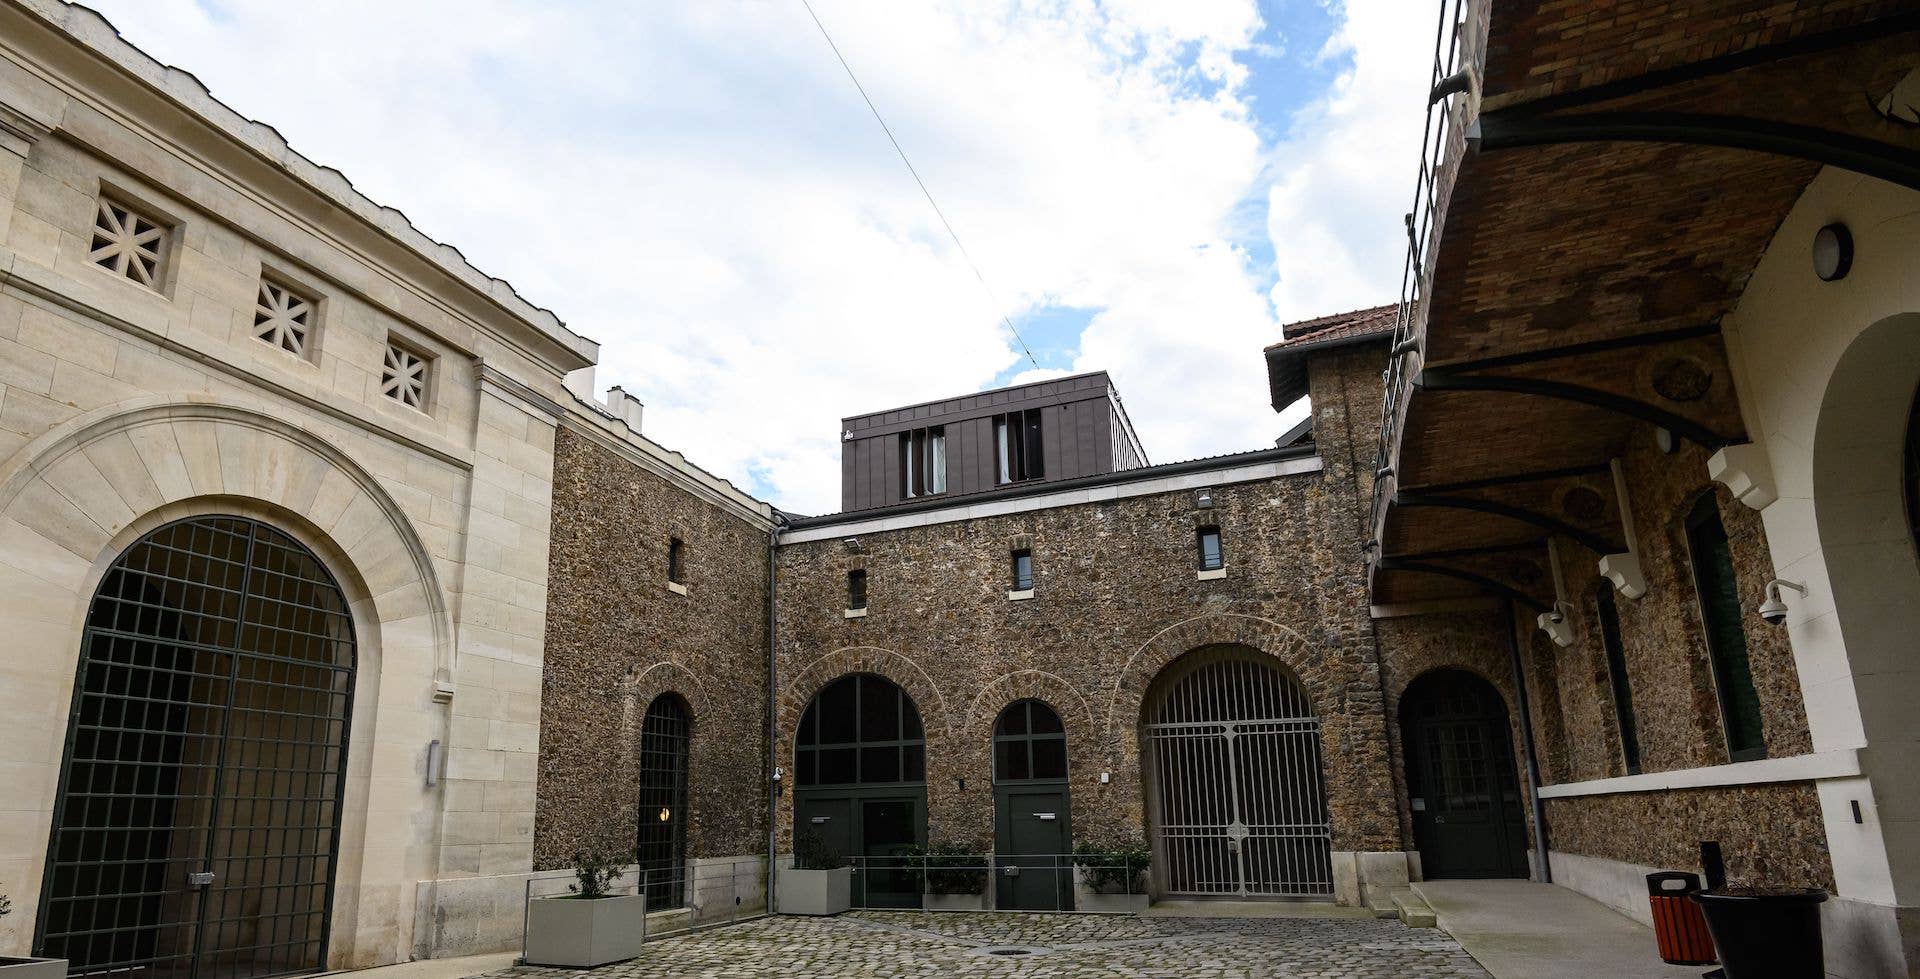 Prison de la Sante, a prison where Jean-Luc Brunel was found dead in his cell, in Paris